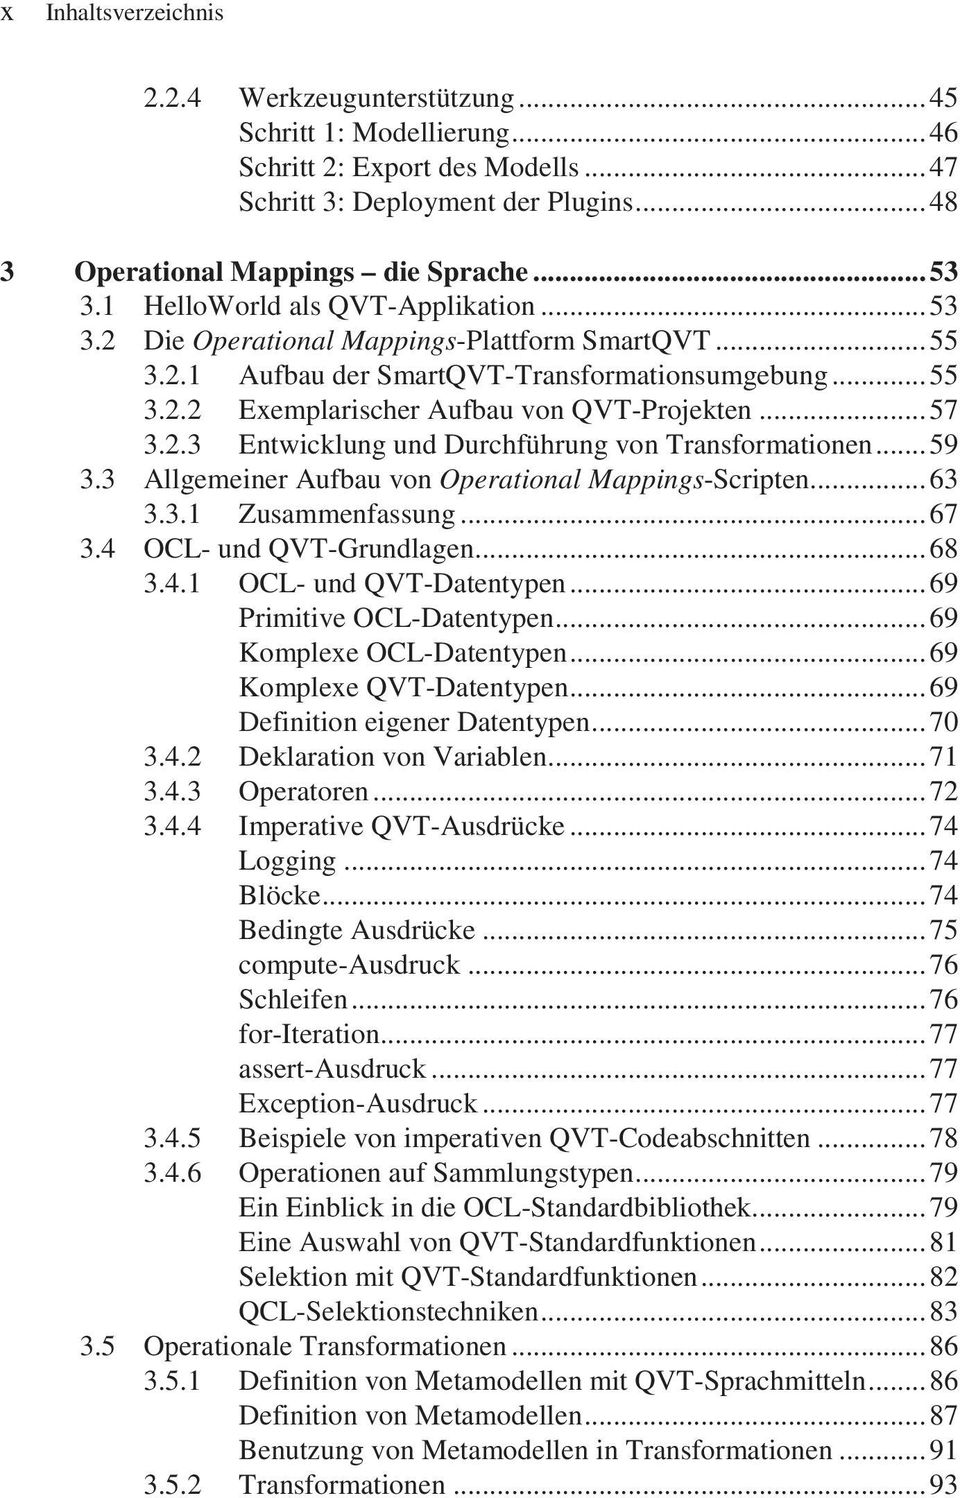 2.3 Entwicklung und Durchführung von Transformationen...59 3.3 Allgemeiner Aufbau von Operational Mappings-Scripten...63 3.3.1 Zusammenfassung...67 3.4 OCL- und QVT-Grundlagen...68 3.4.1 OCL- und QVT-Datentypen.